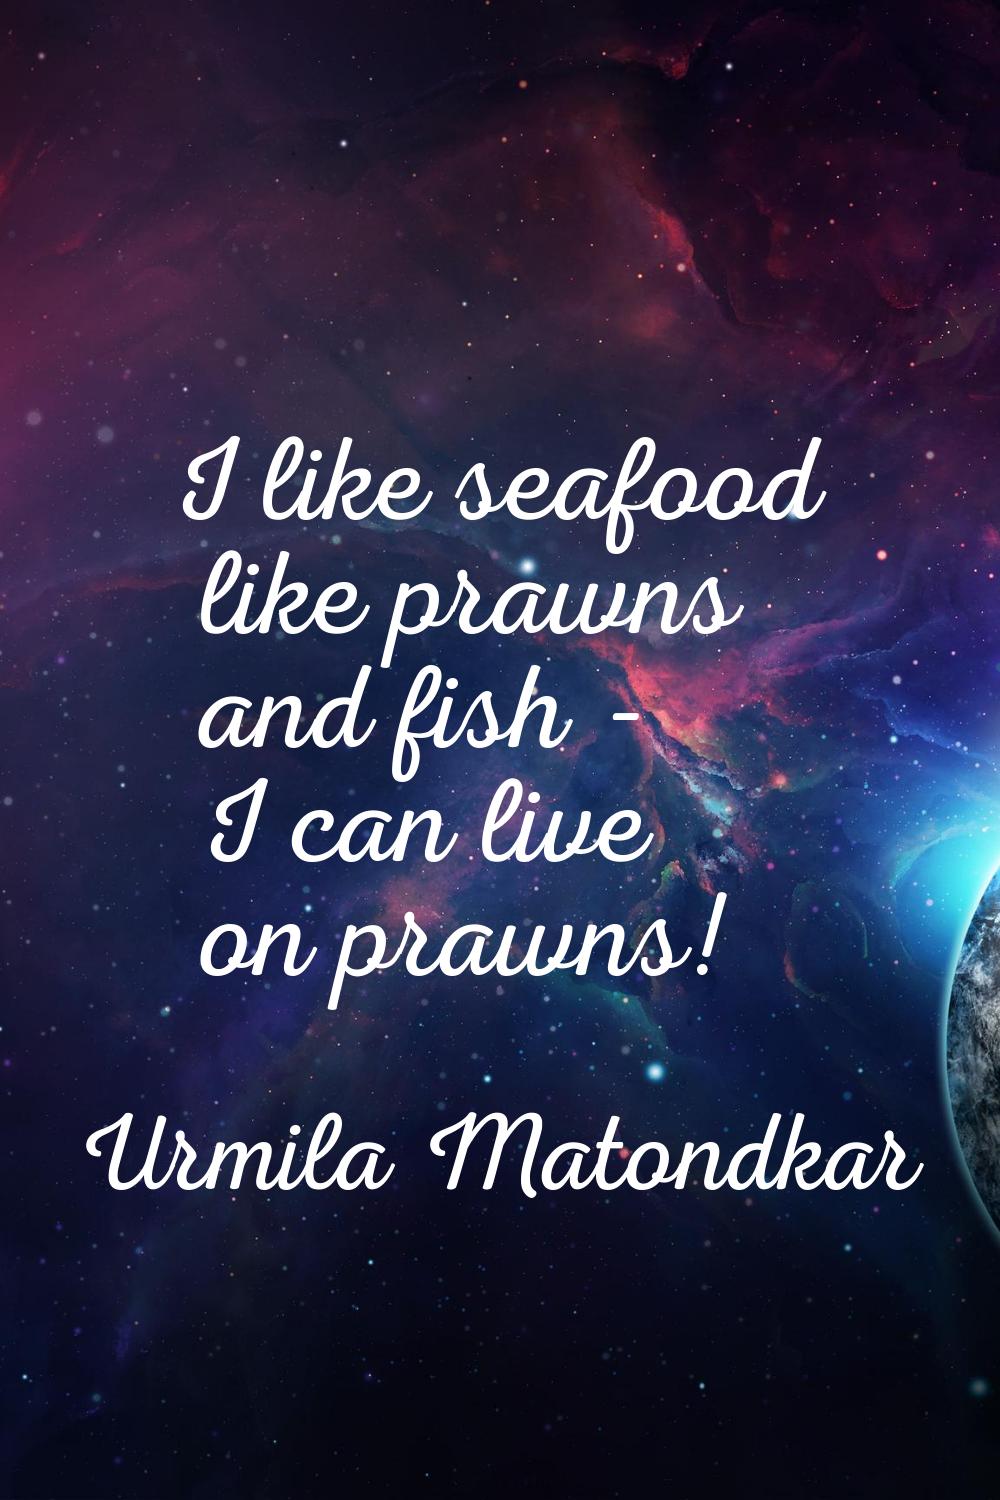 I like seafood like prawns and fish - I can live on prawns!